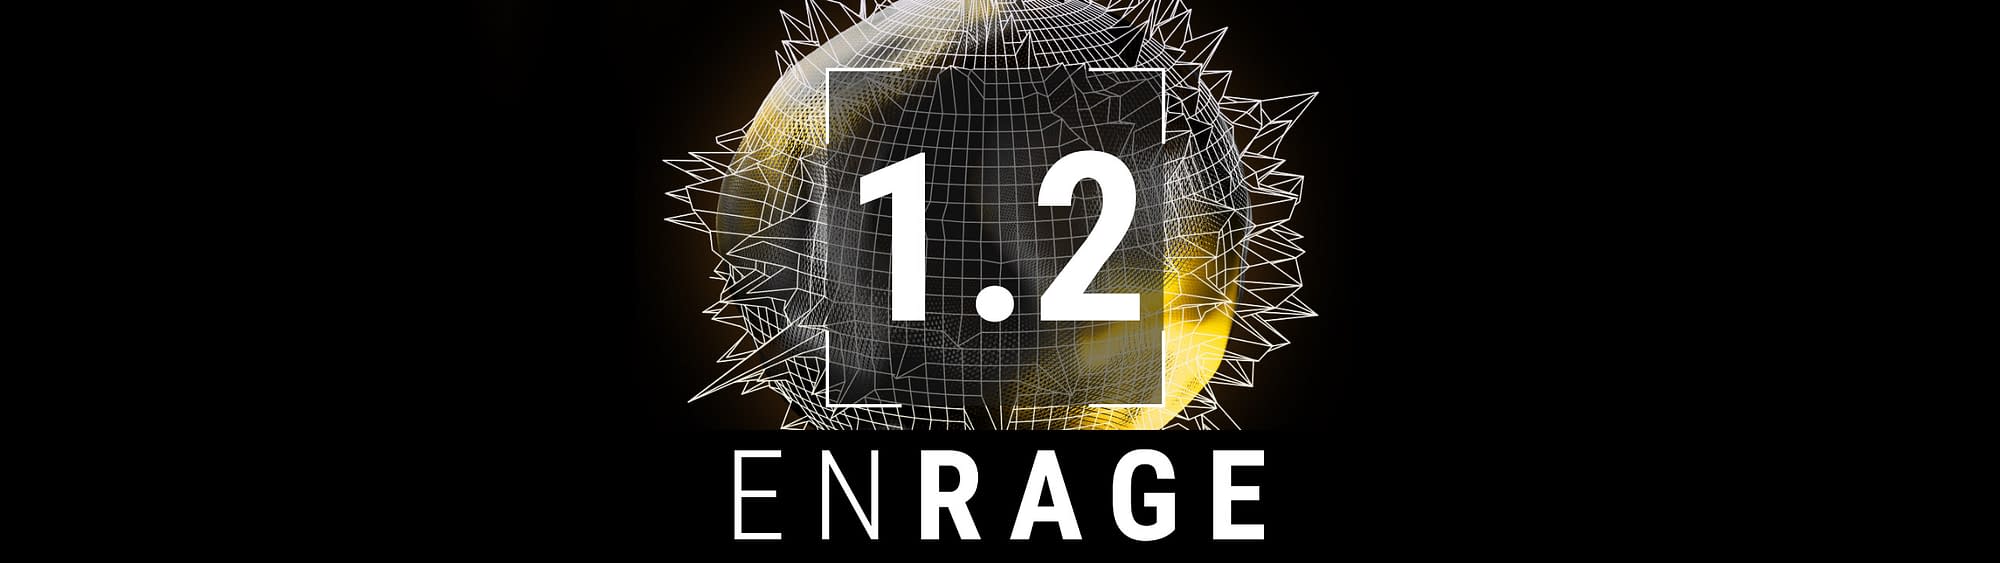 EnRage 1.2 Update Blog Banner